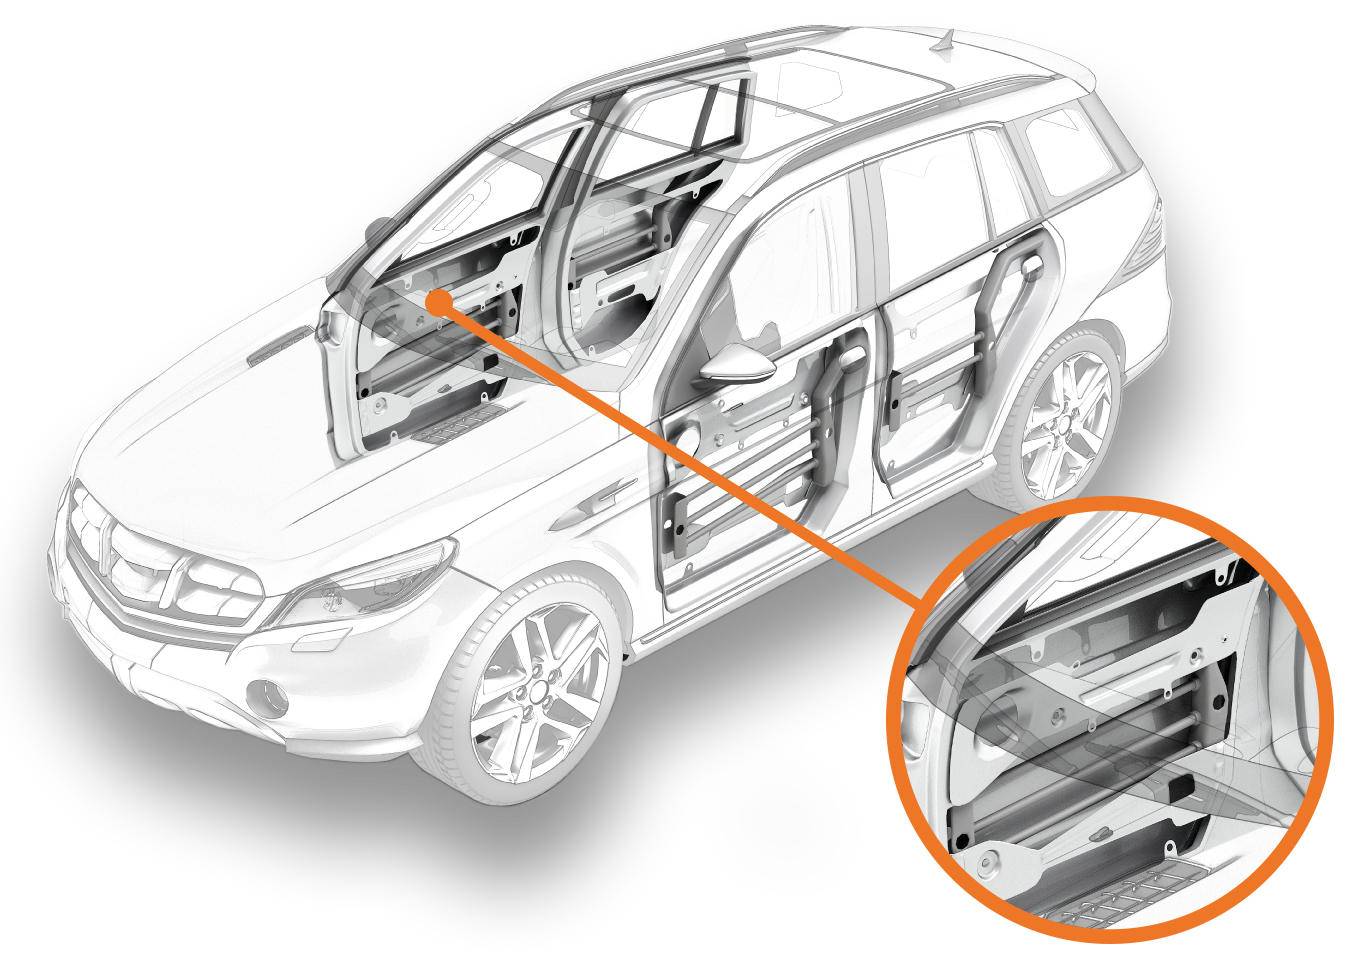 OEm often use trim clips in on door trim and door panels in the automotive industry